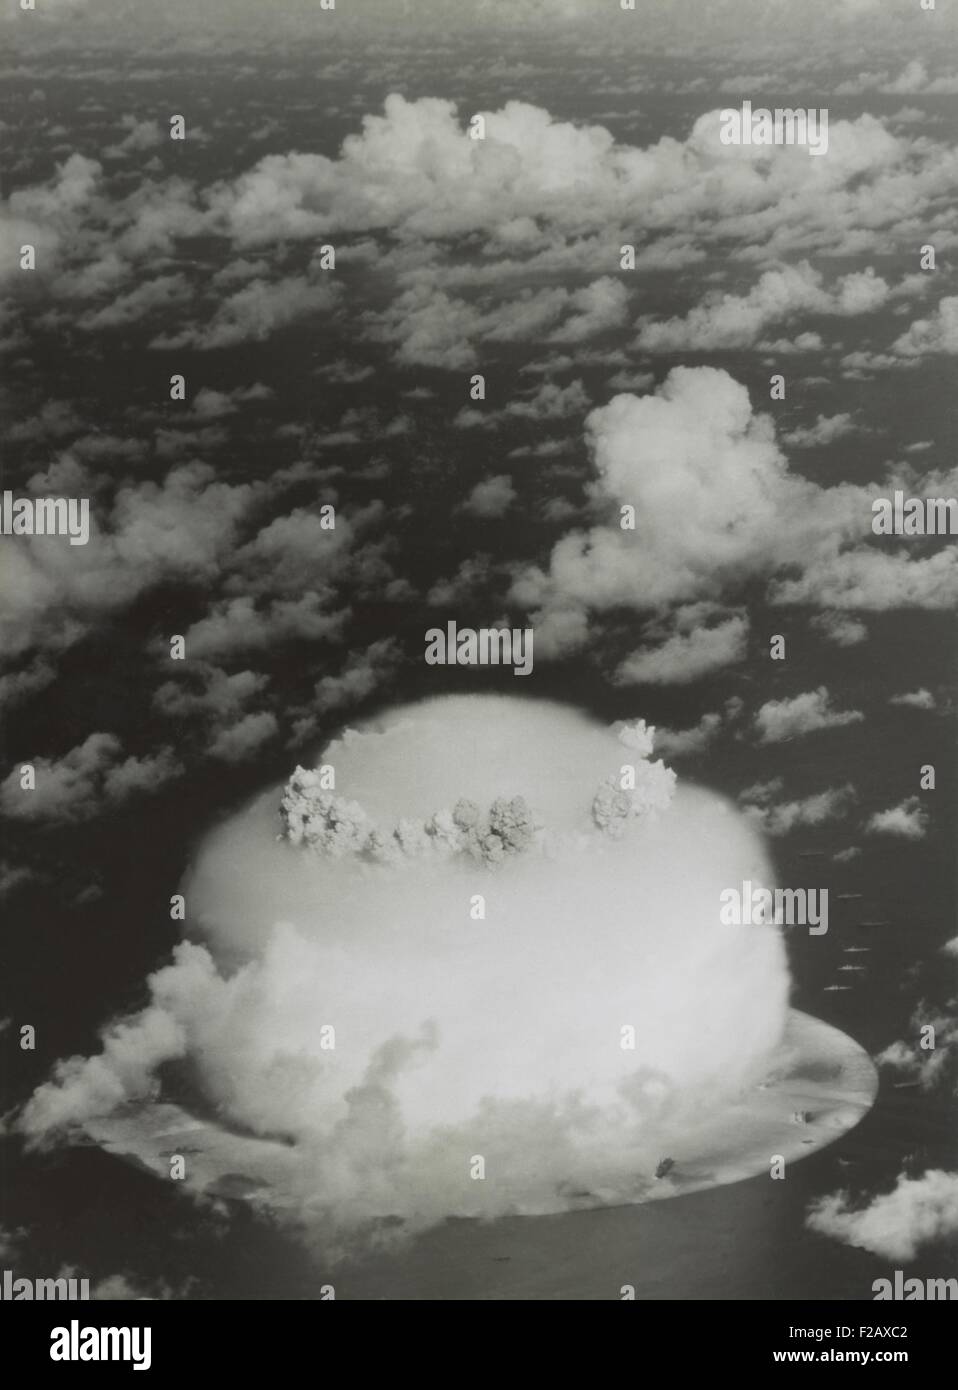 Le test de fonctionnement de BAKER Crossroads, 25 juillet 1946. Photo montre le nuage de condensation en forme de dôme autour de la bulle de gaz de l'aérolithe. (BSLOC 2015 2 3) Banque D'Images